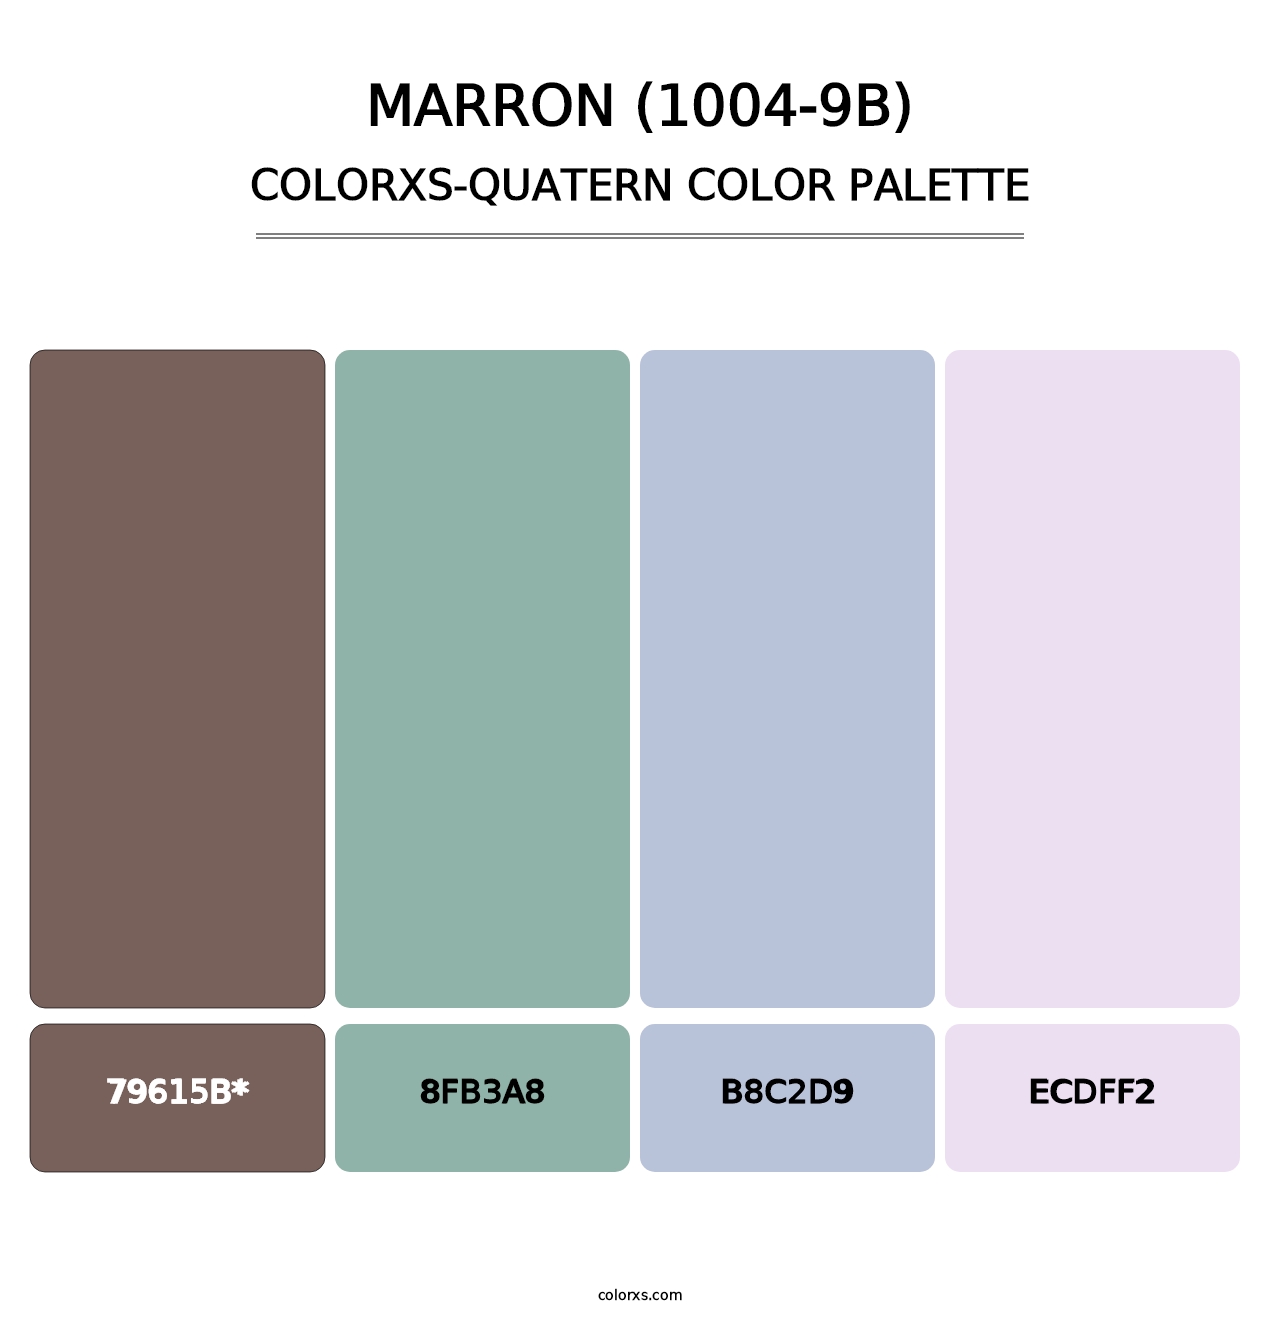 Marron (1004-9B) - Colorxs Quatern Palette